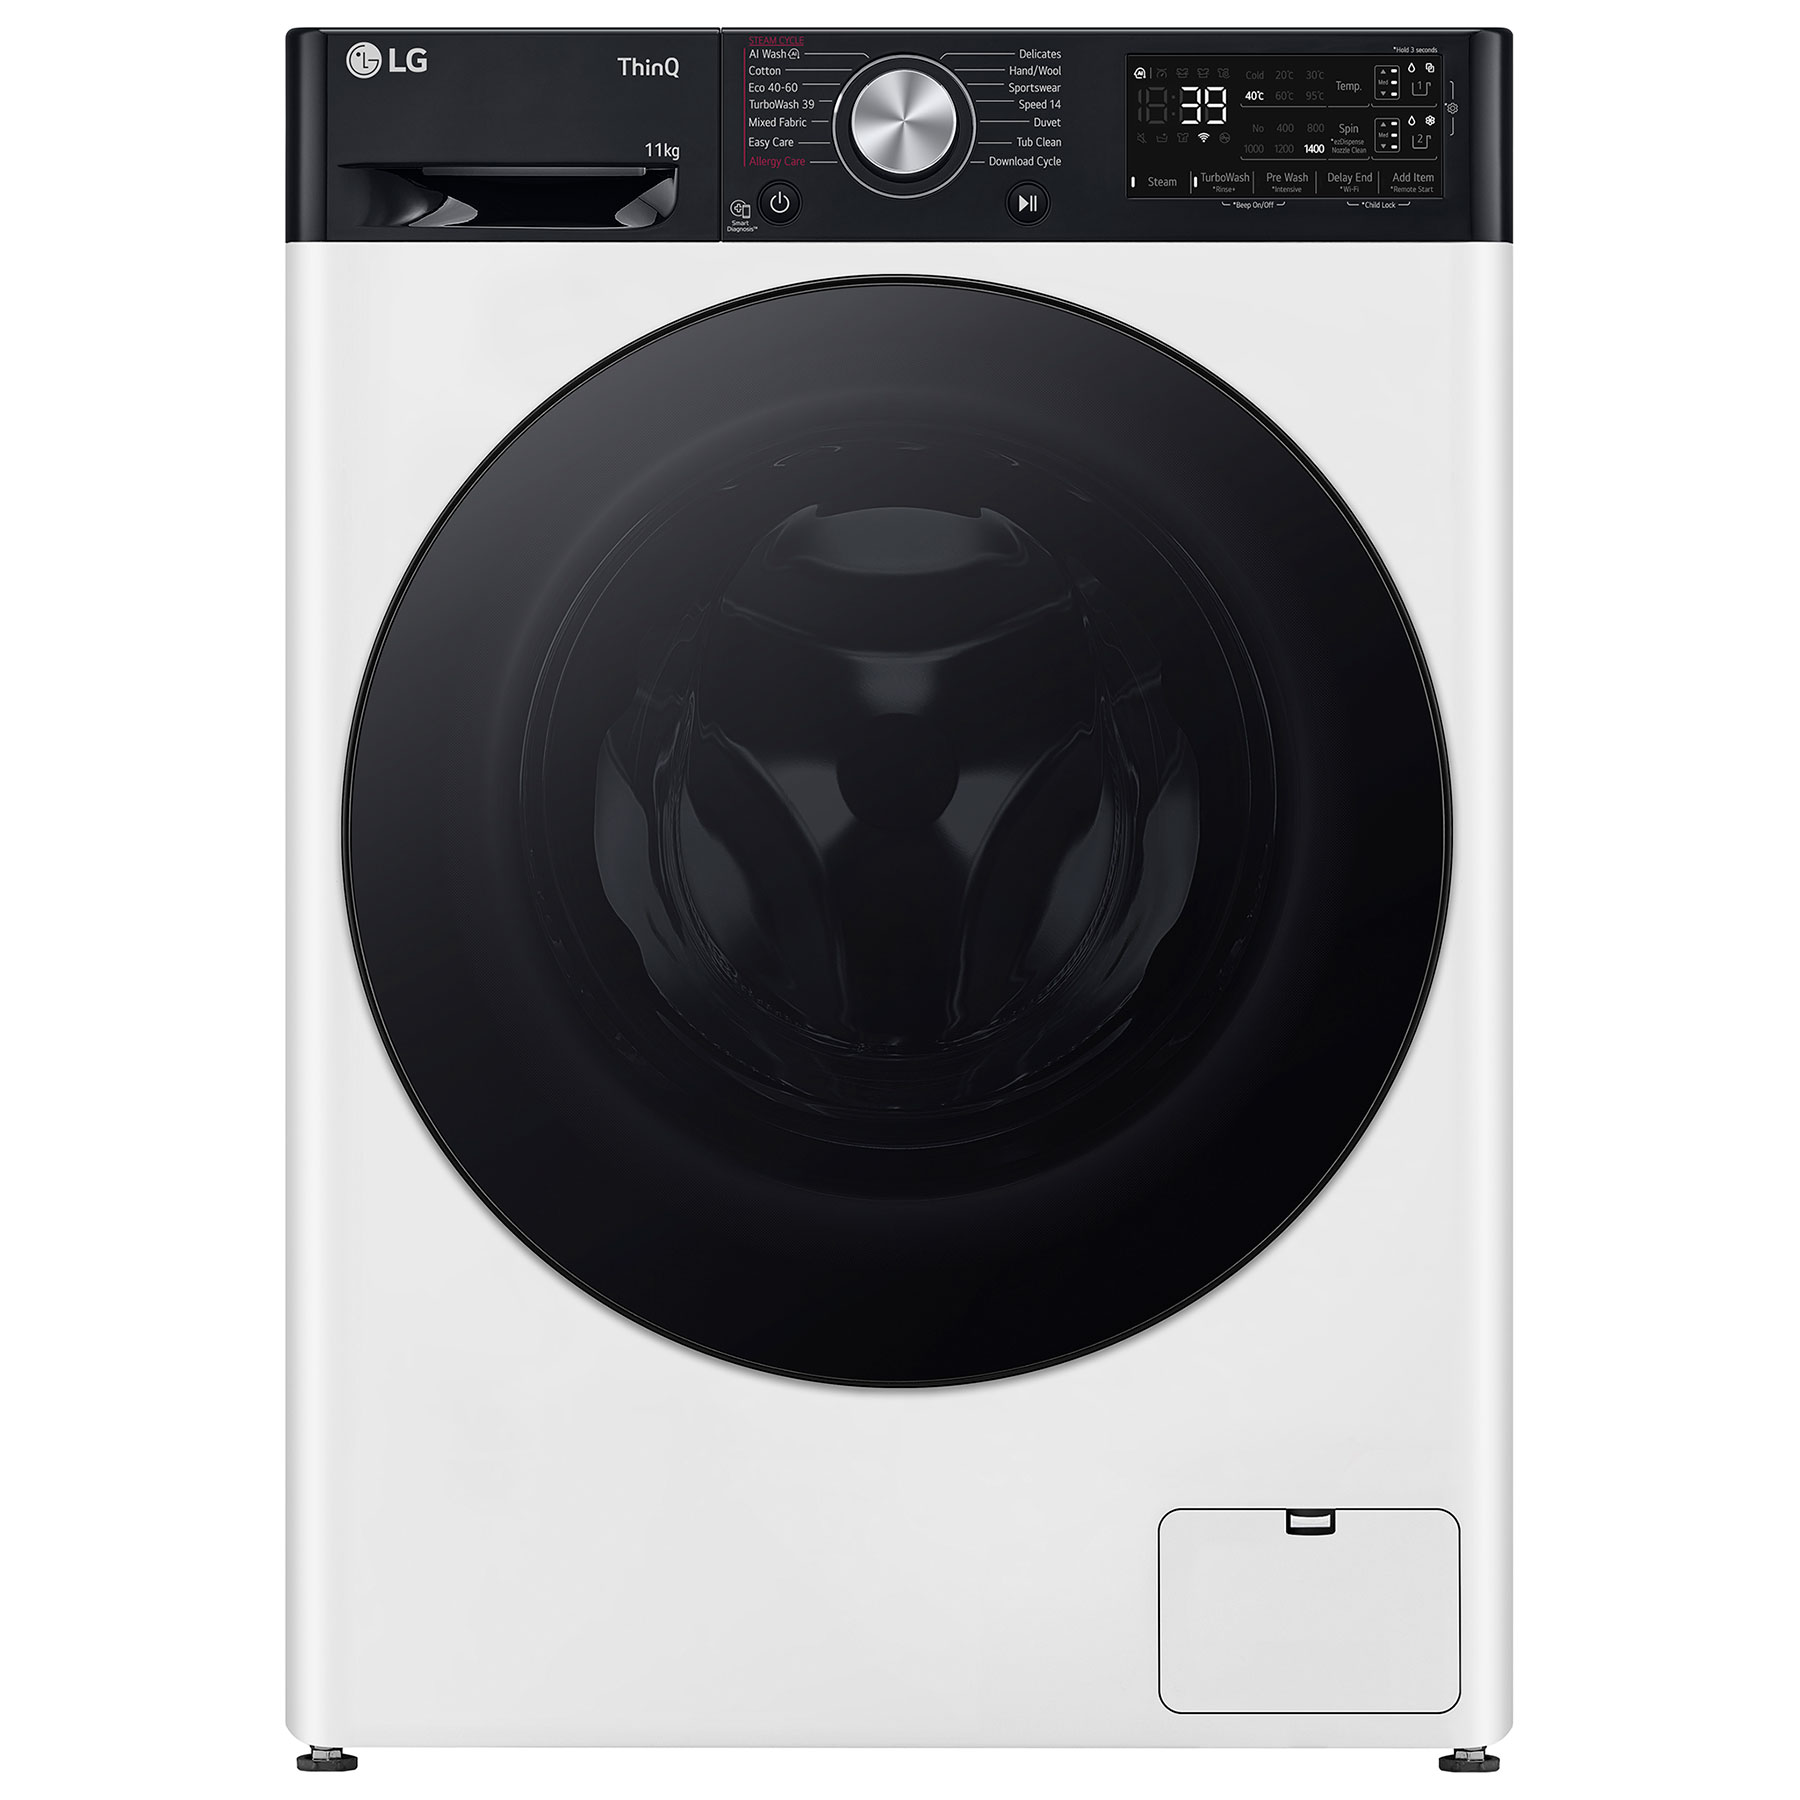 LG F4Y711WBTA1 Washing Machine in White 1400rpm 11kg A Rated Wi Fi